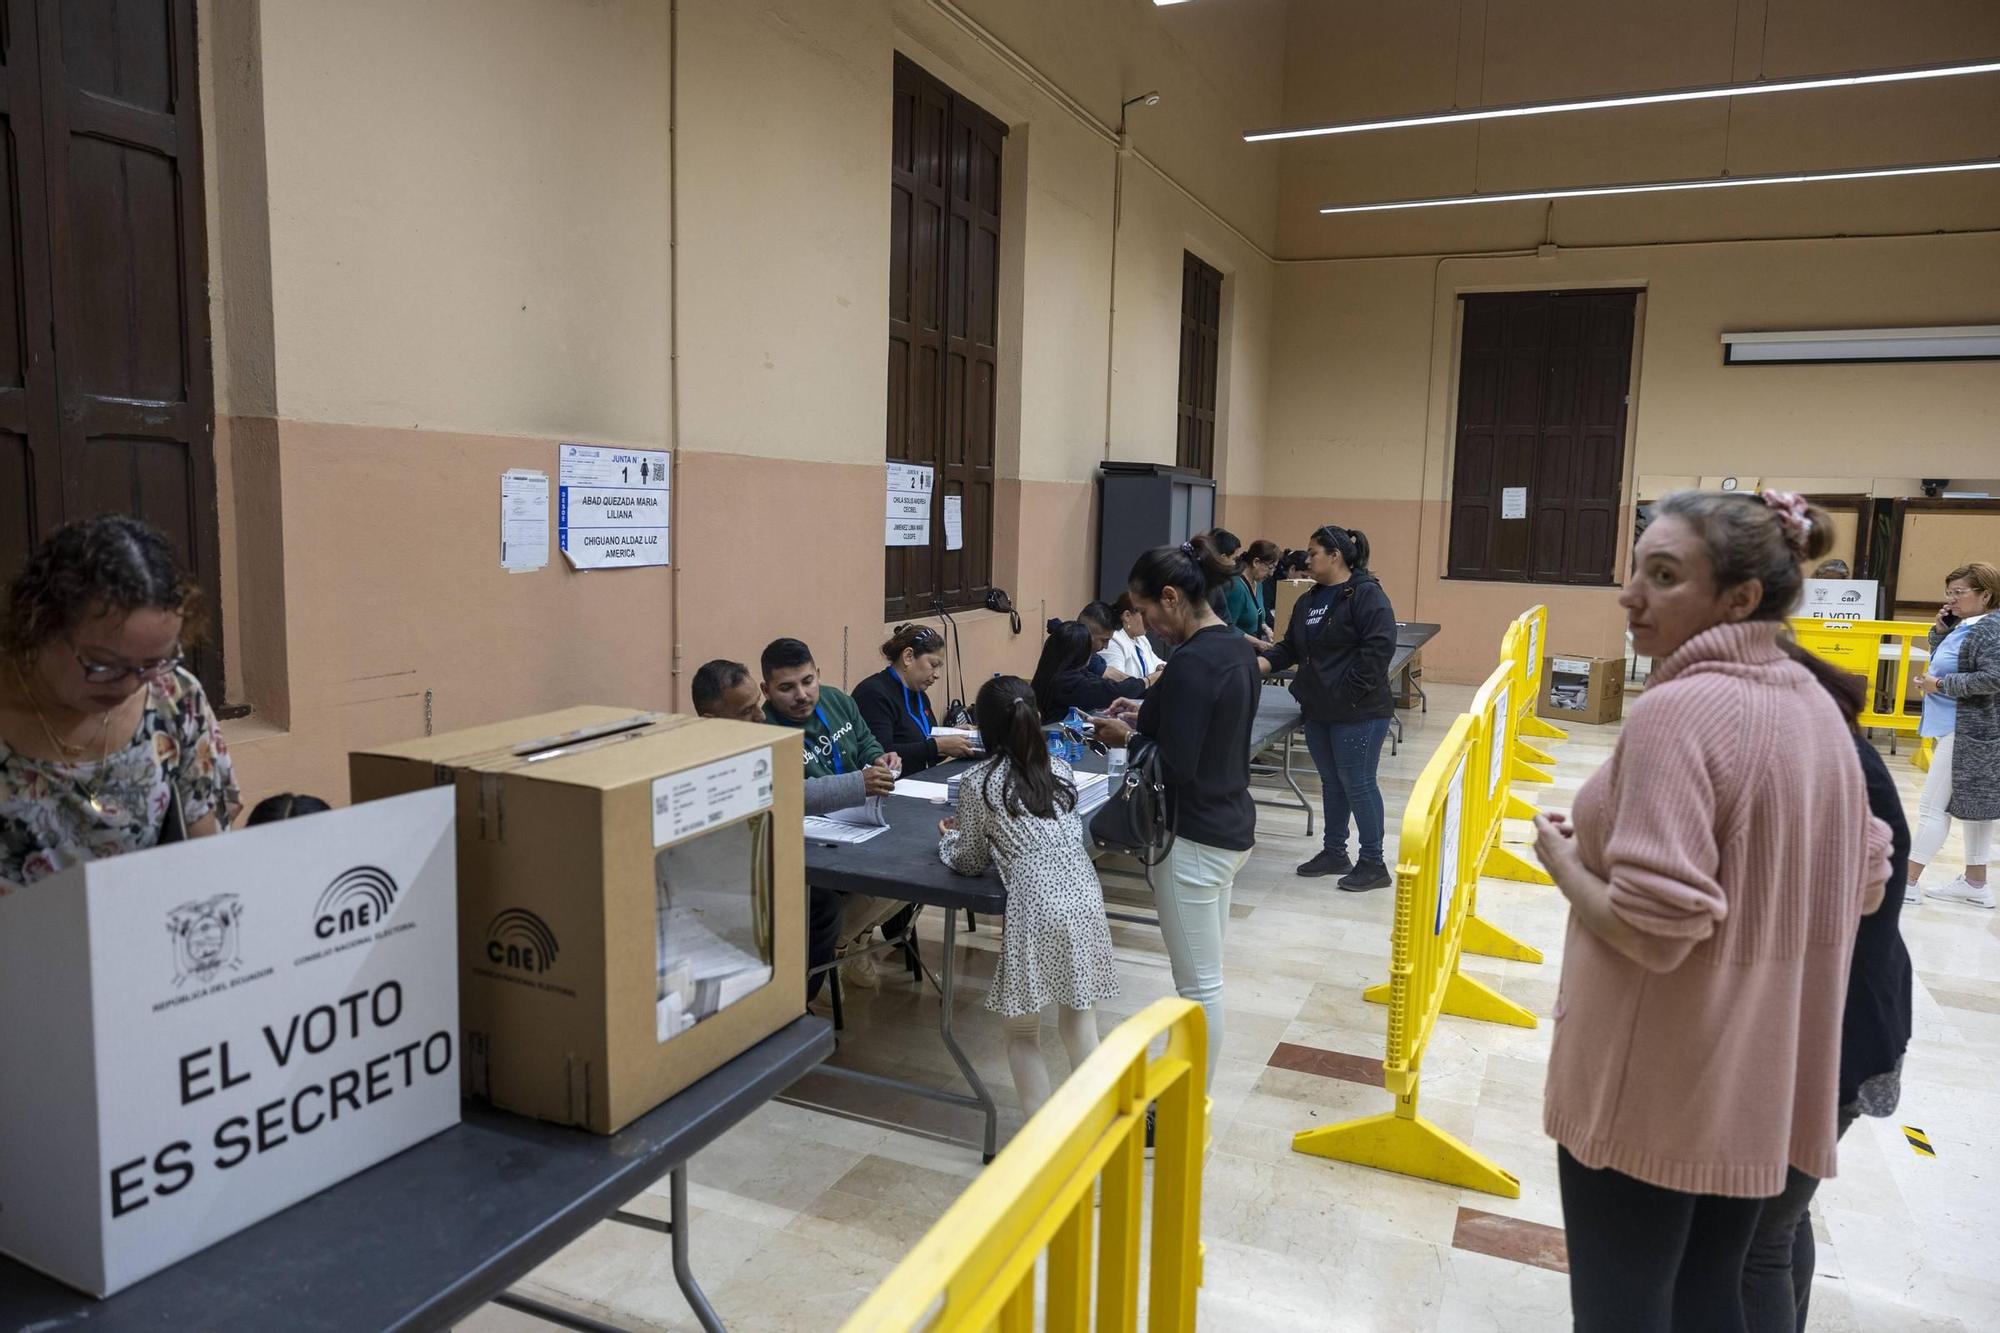 Los ecuatorianos residentes en Baleares acuden a votar en el referéndum por la seguridad y el empleo